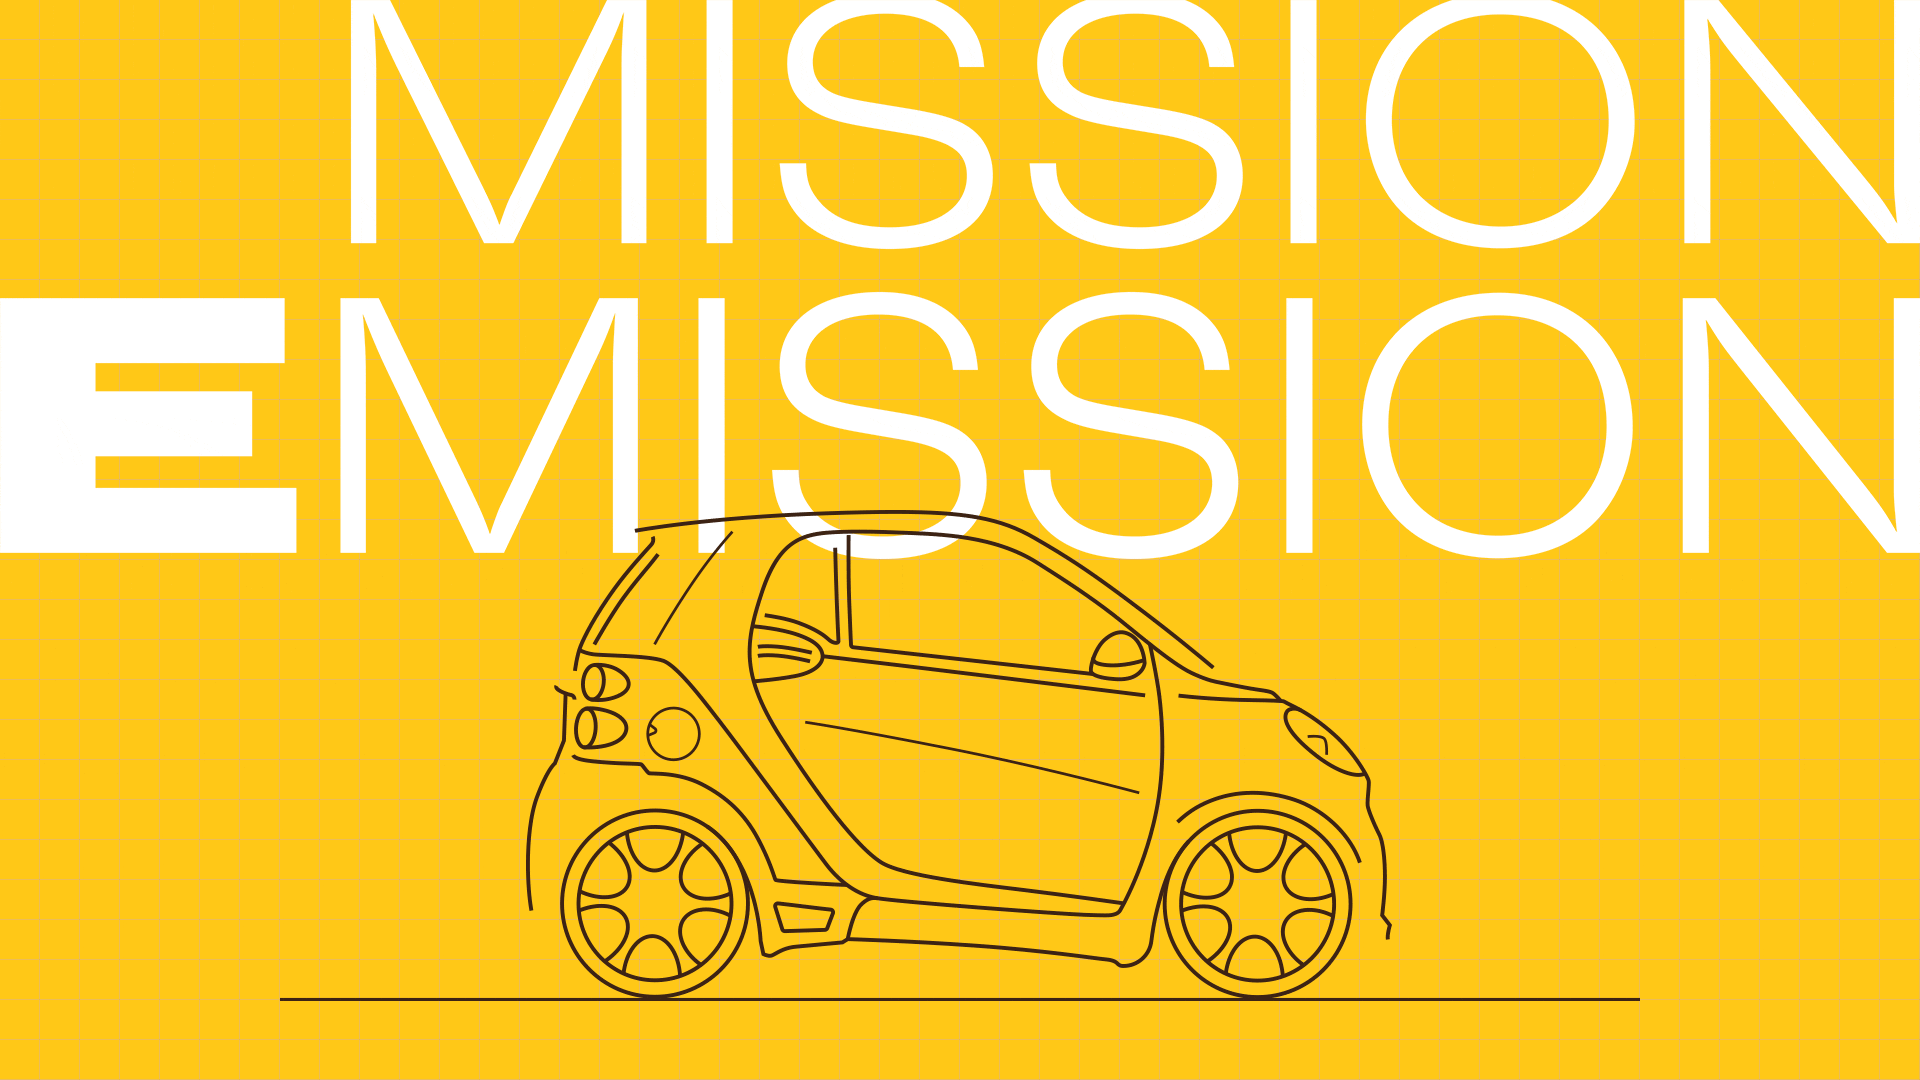 Mission Emission media 2